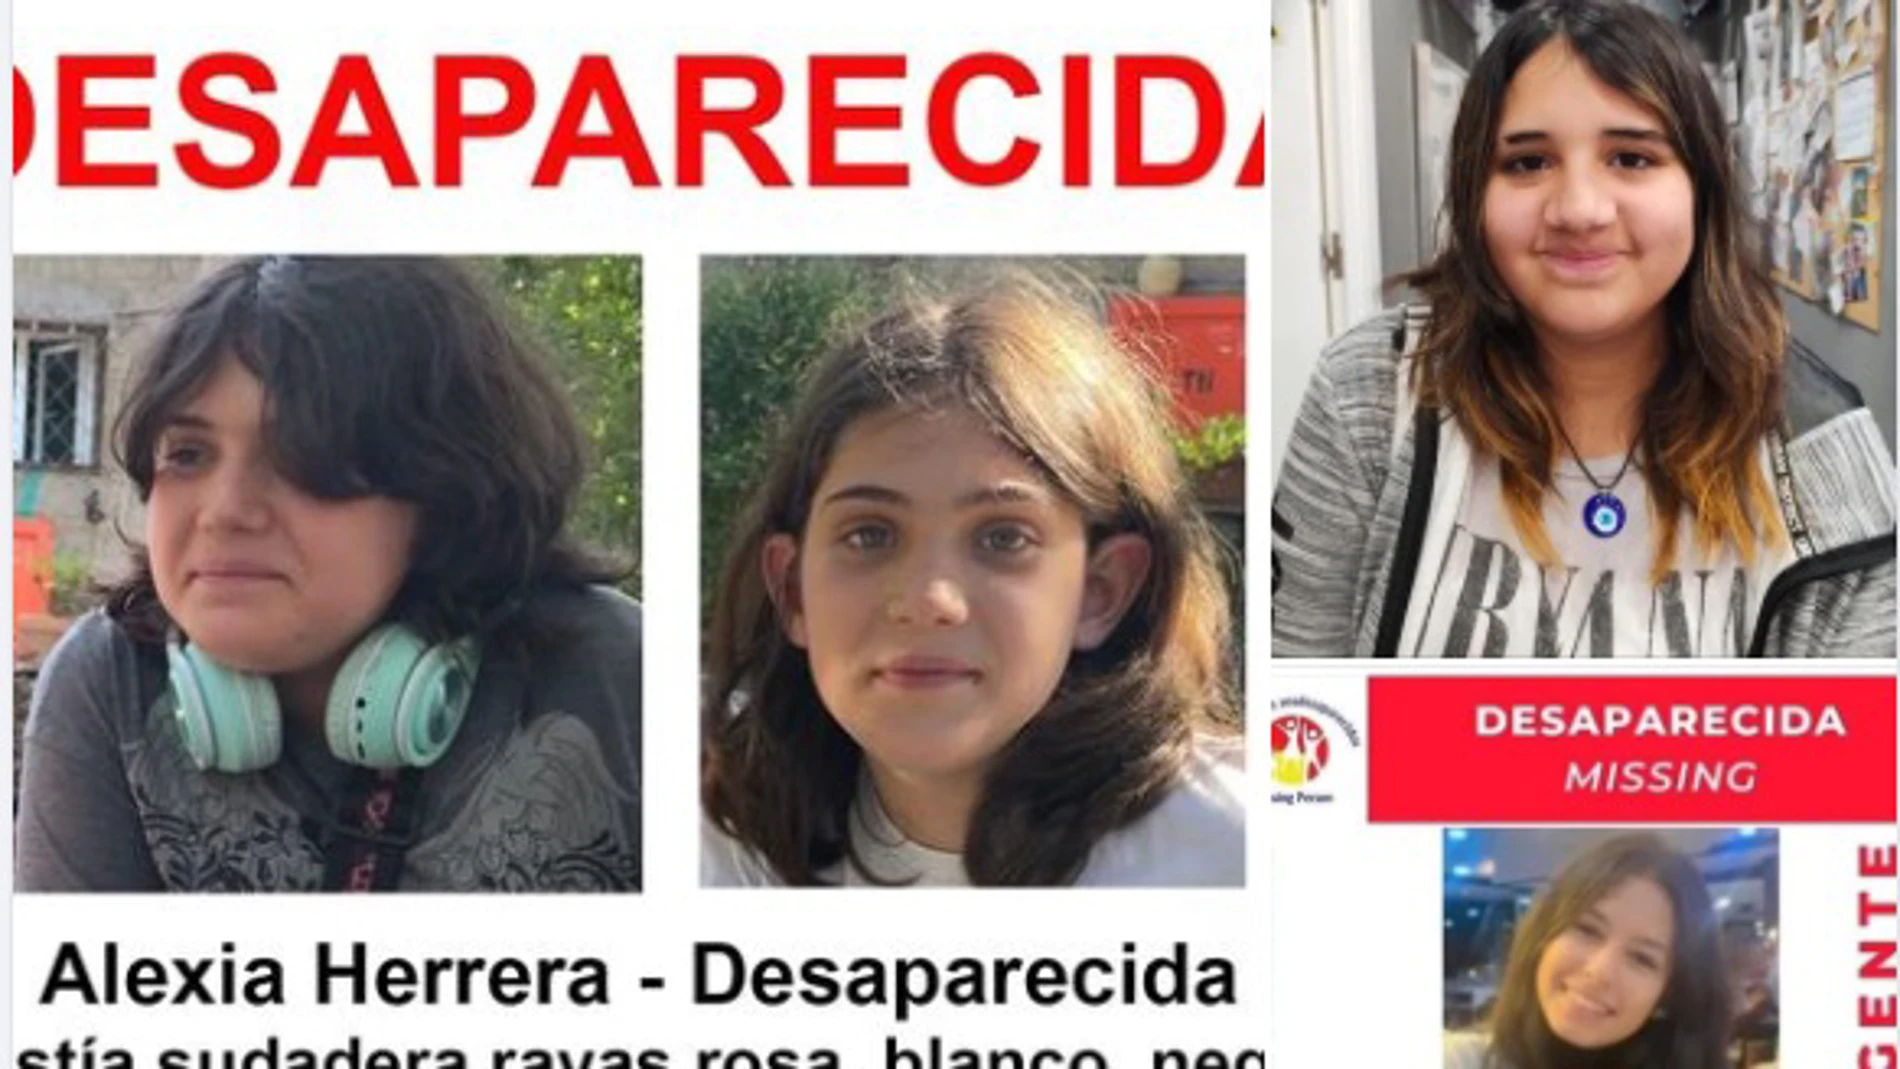 Buscan a tres menores desaparecidos en Galapagar en dos sucesos diferentes